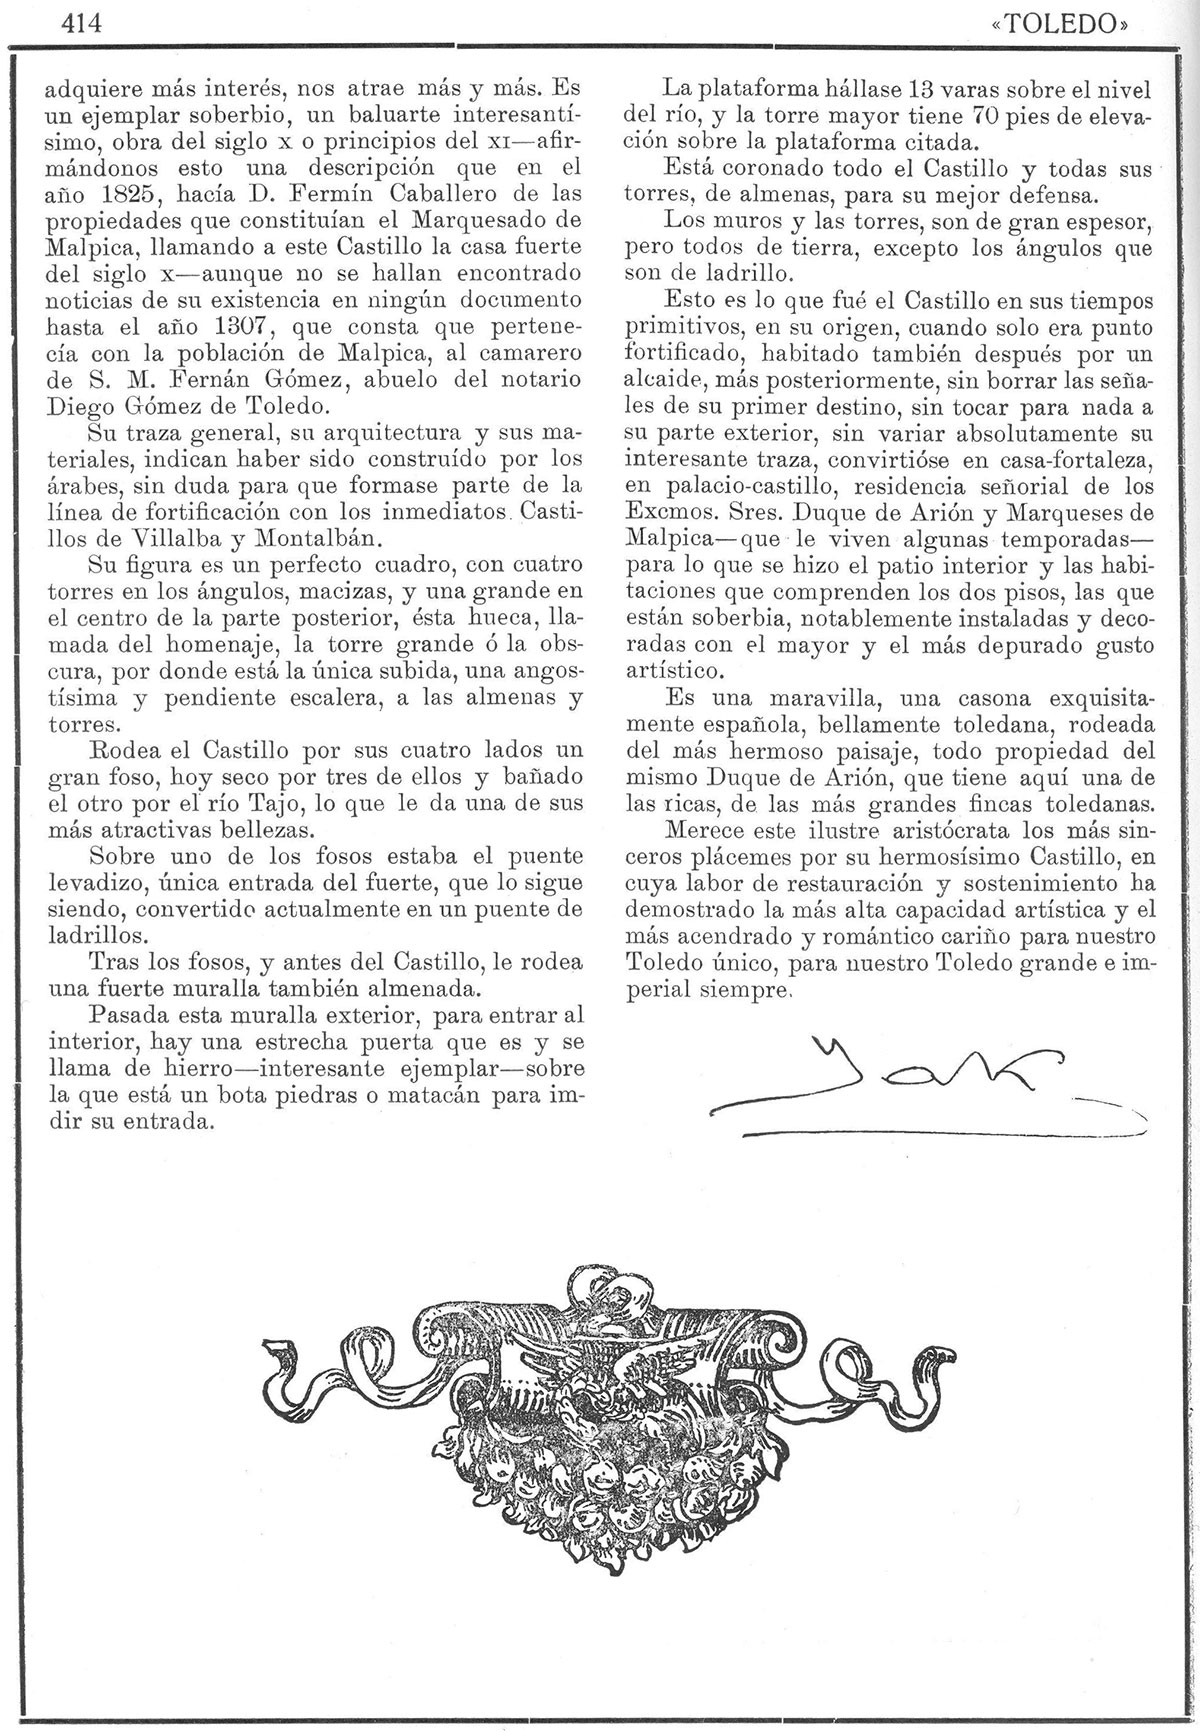 Castillos toledanos: El de Malpica de Tajo del duque de Arión. Toledo: Revista de Arte. 1/7/1922